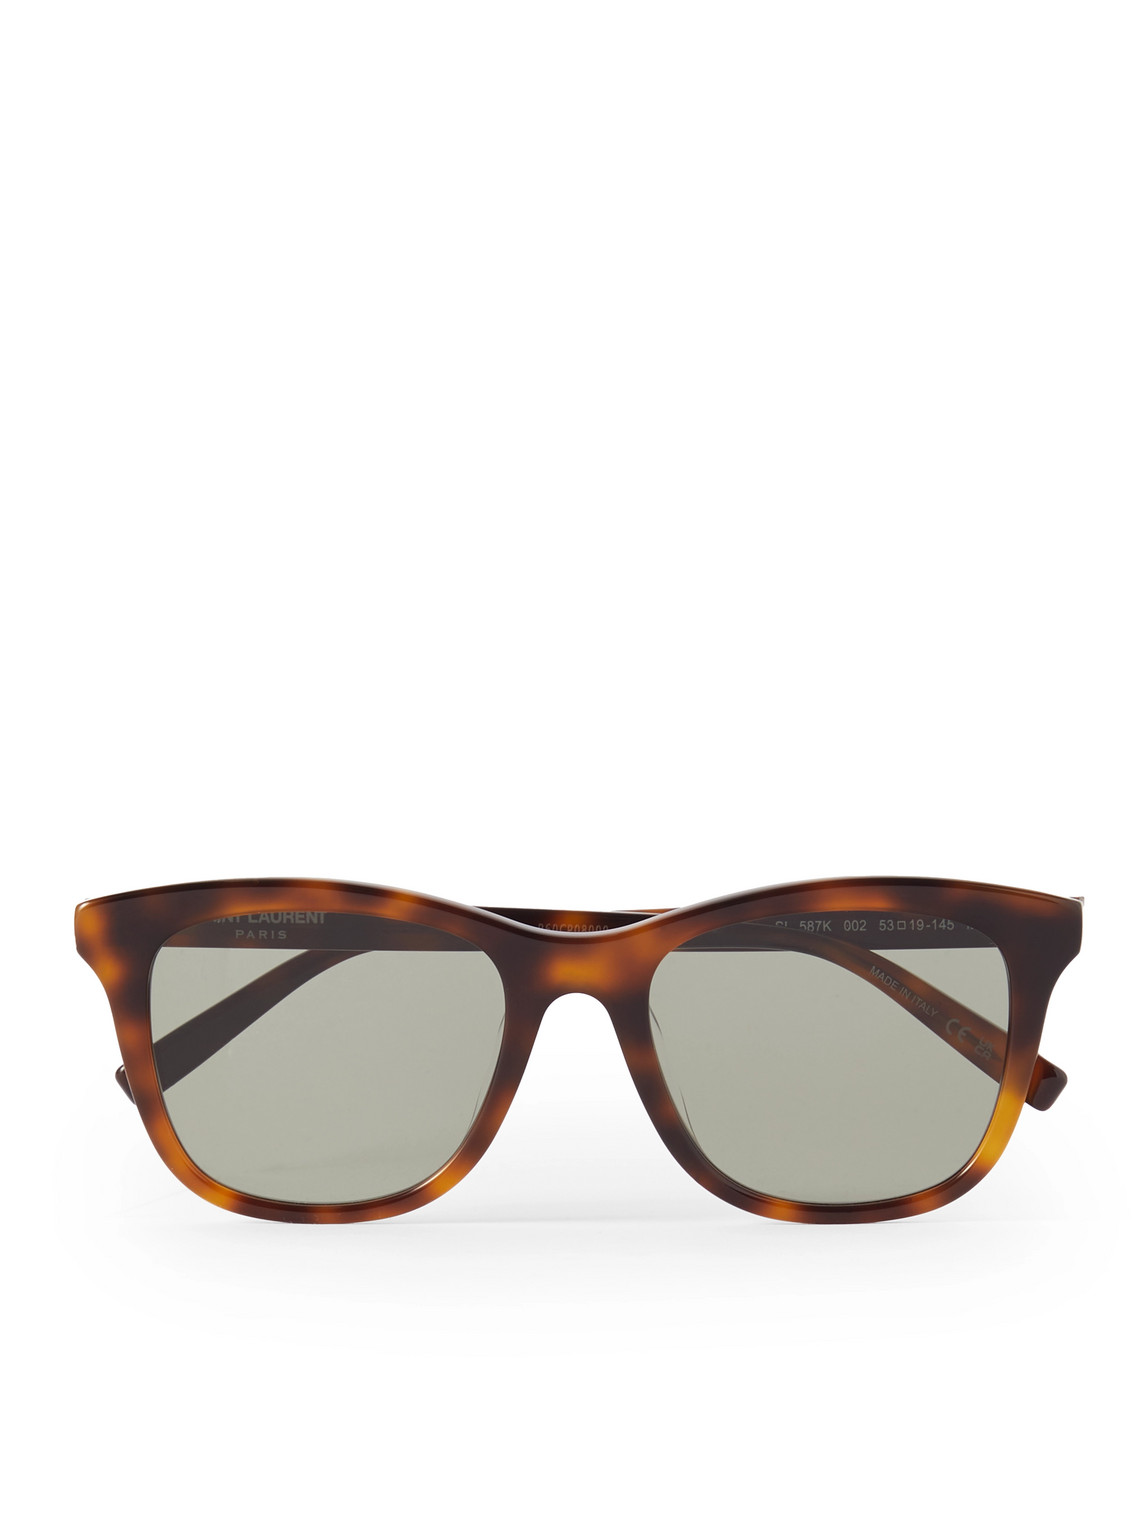 Saint Laurent D-frame Acetate Tortoiseshell Sunglasses In Black